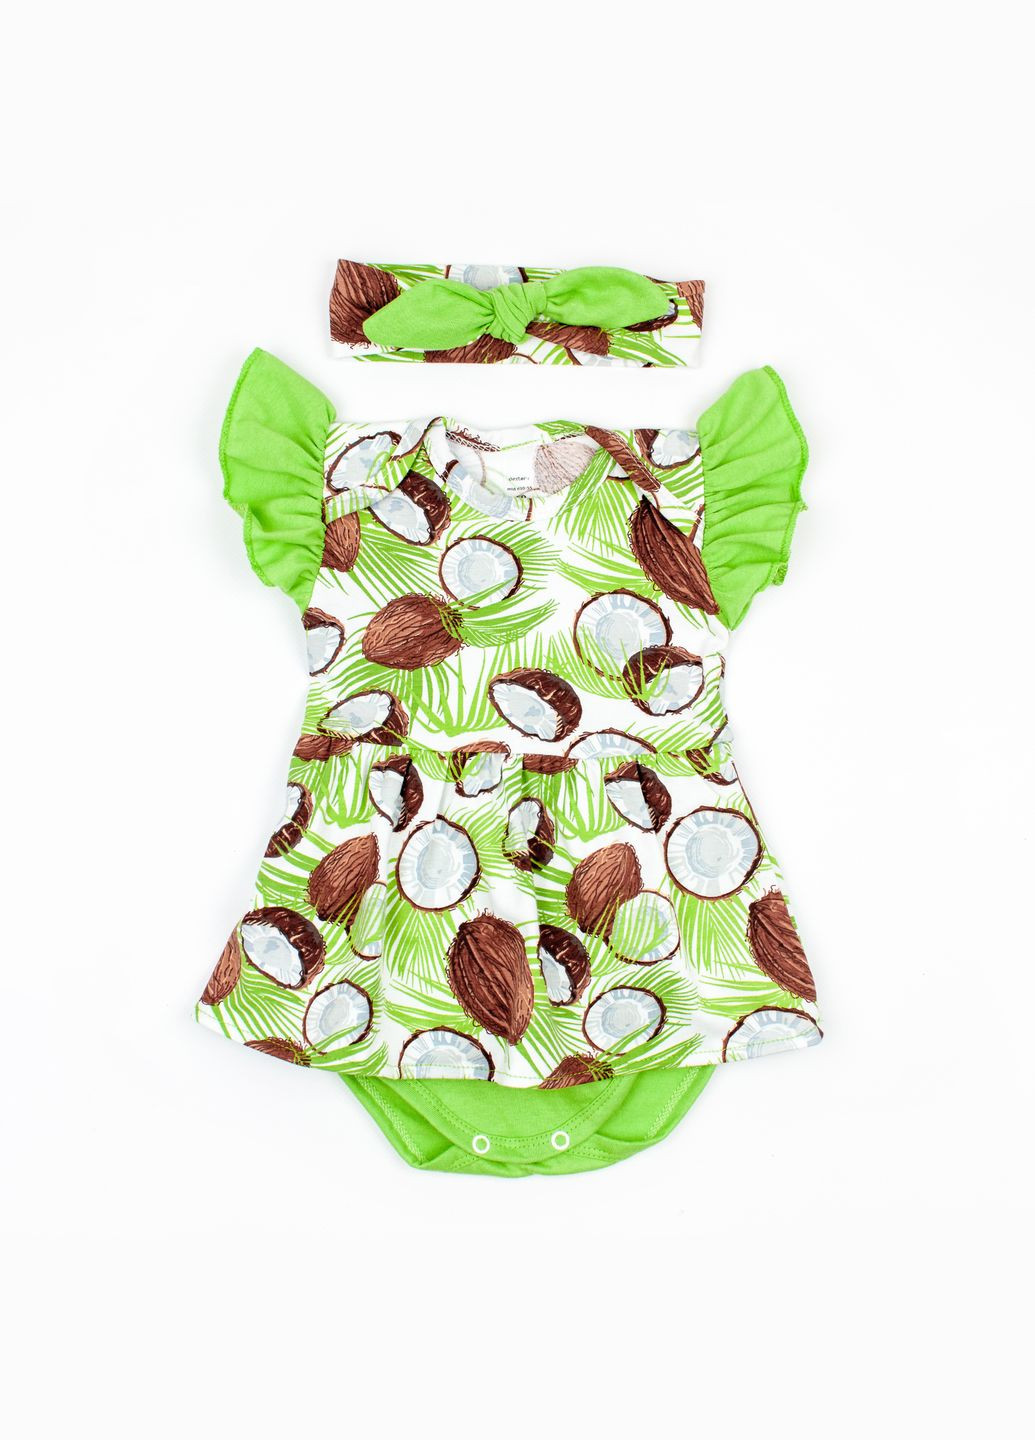 Боди Dexter`s-платье с коротким рукавом и повязкой кокосовые мечты зеленый;коричневый dexter's (292012738)